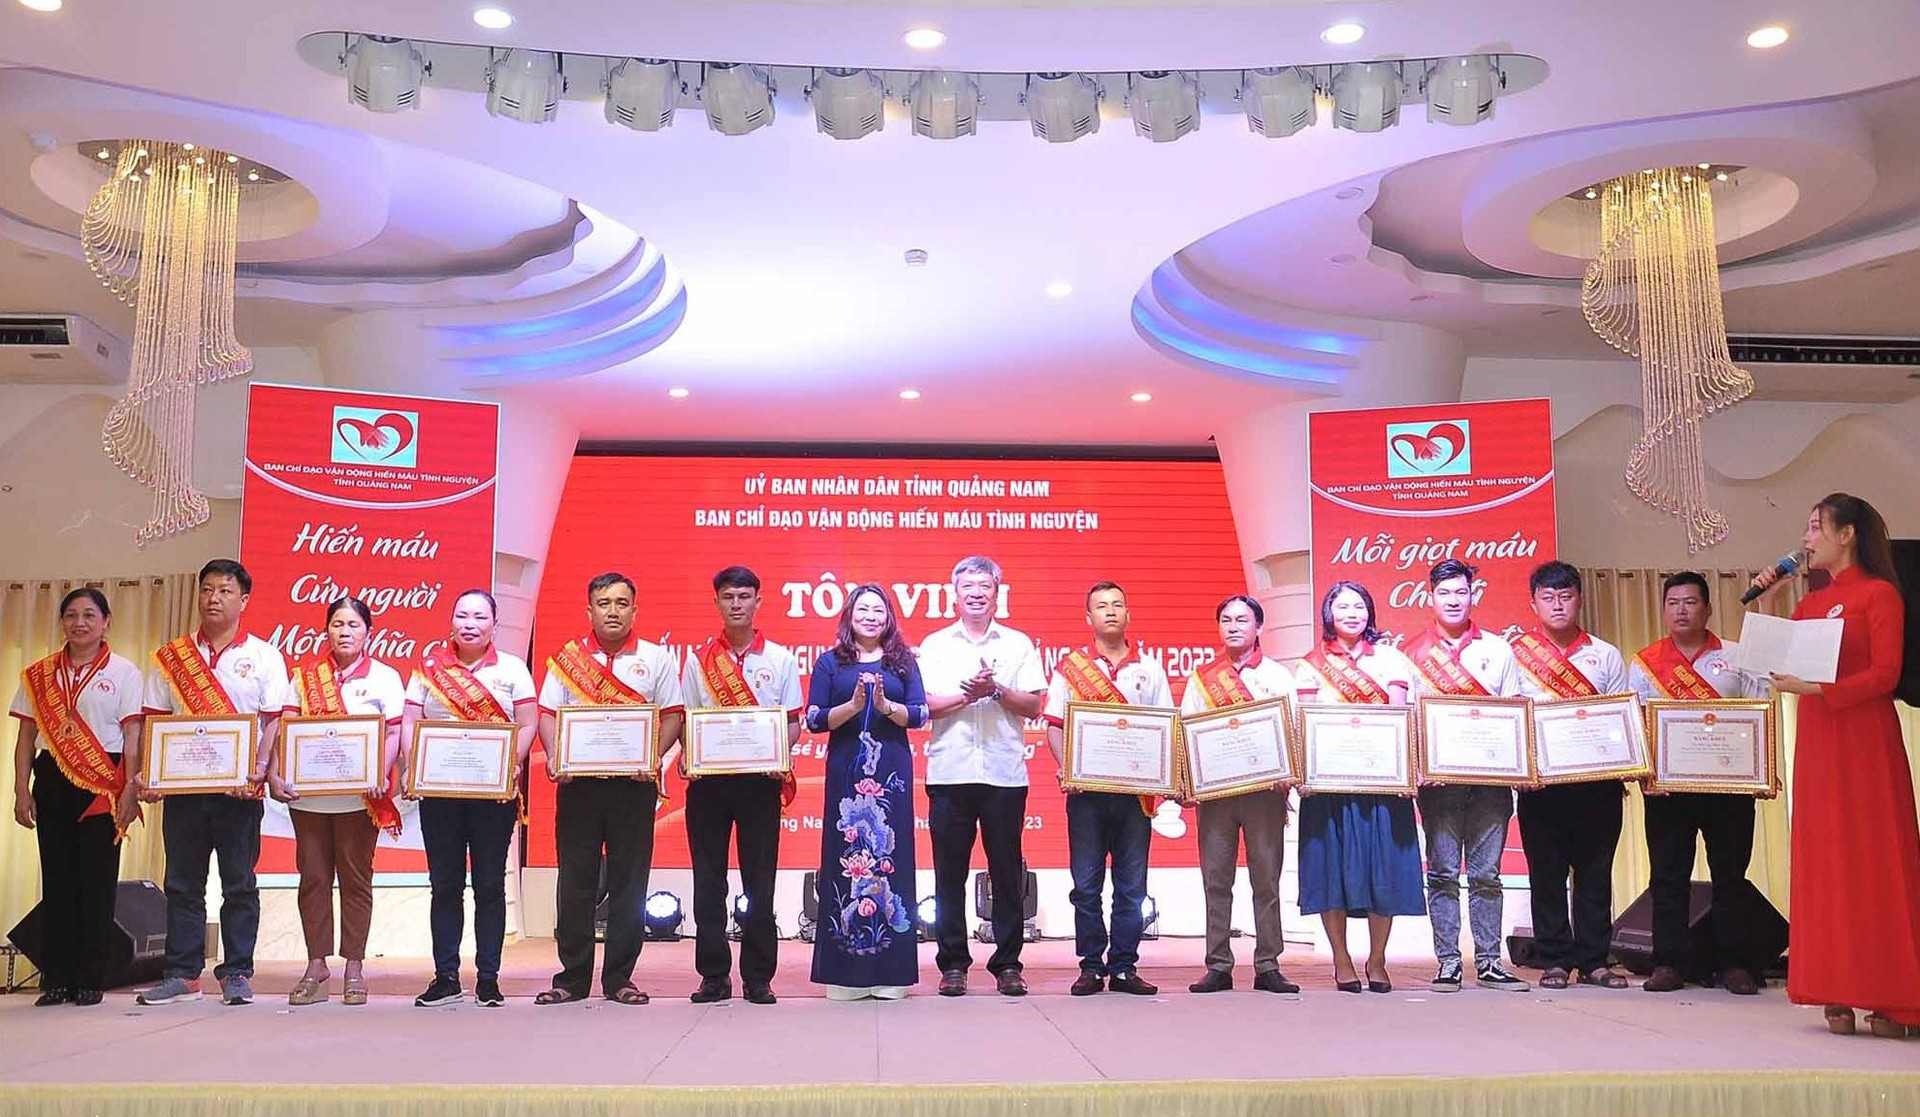 Trưởng ban Tuyên giáo Tỉnh ủy Nguyễn Thị Thu Lan và Phó Chủ tịch UBND tỉnh Hồ Quang Bửu trao bằng khen cho người hiến máu tiêu biểu. Ảnh: V.A